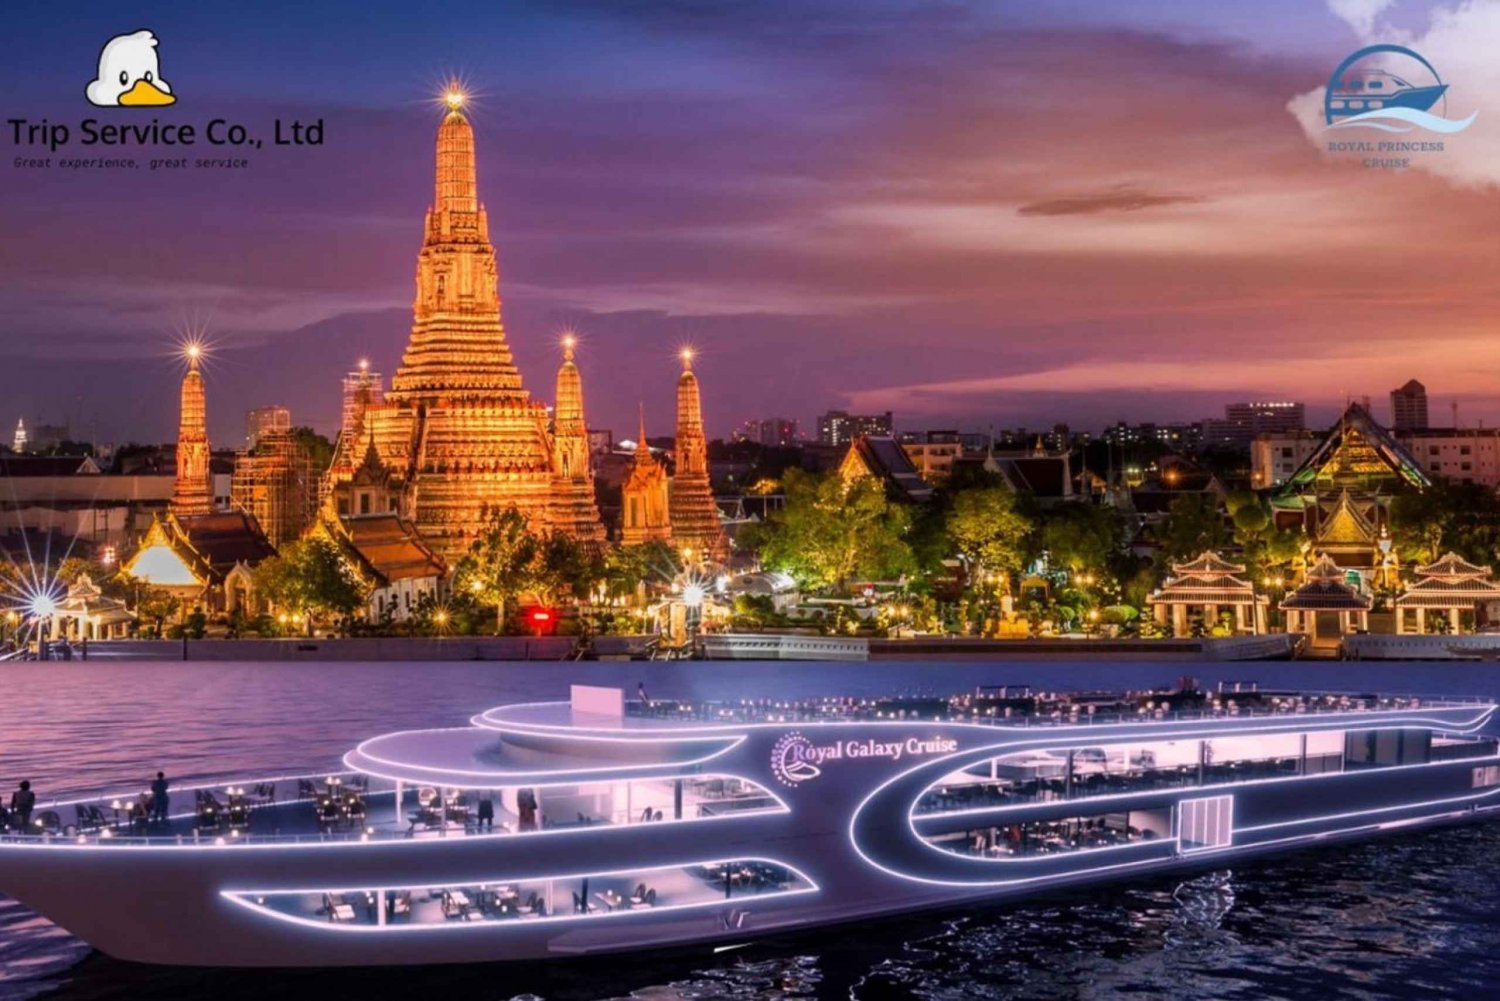 Bangkok: Royal Galaxy Chao Phraya River Middagskrydstogt